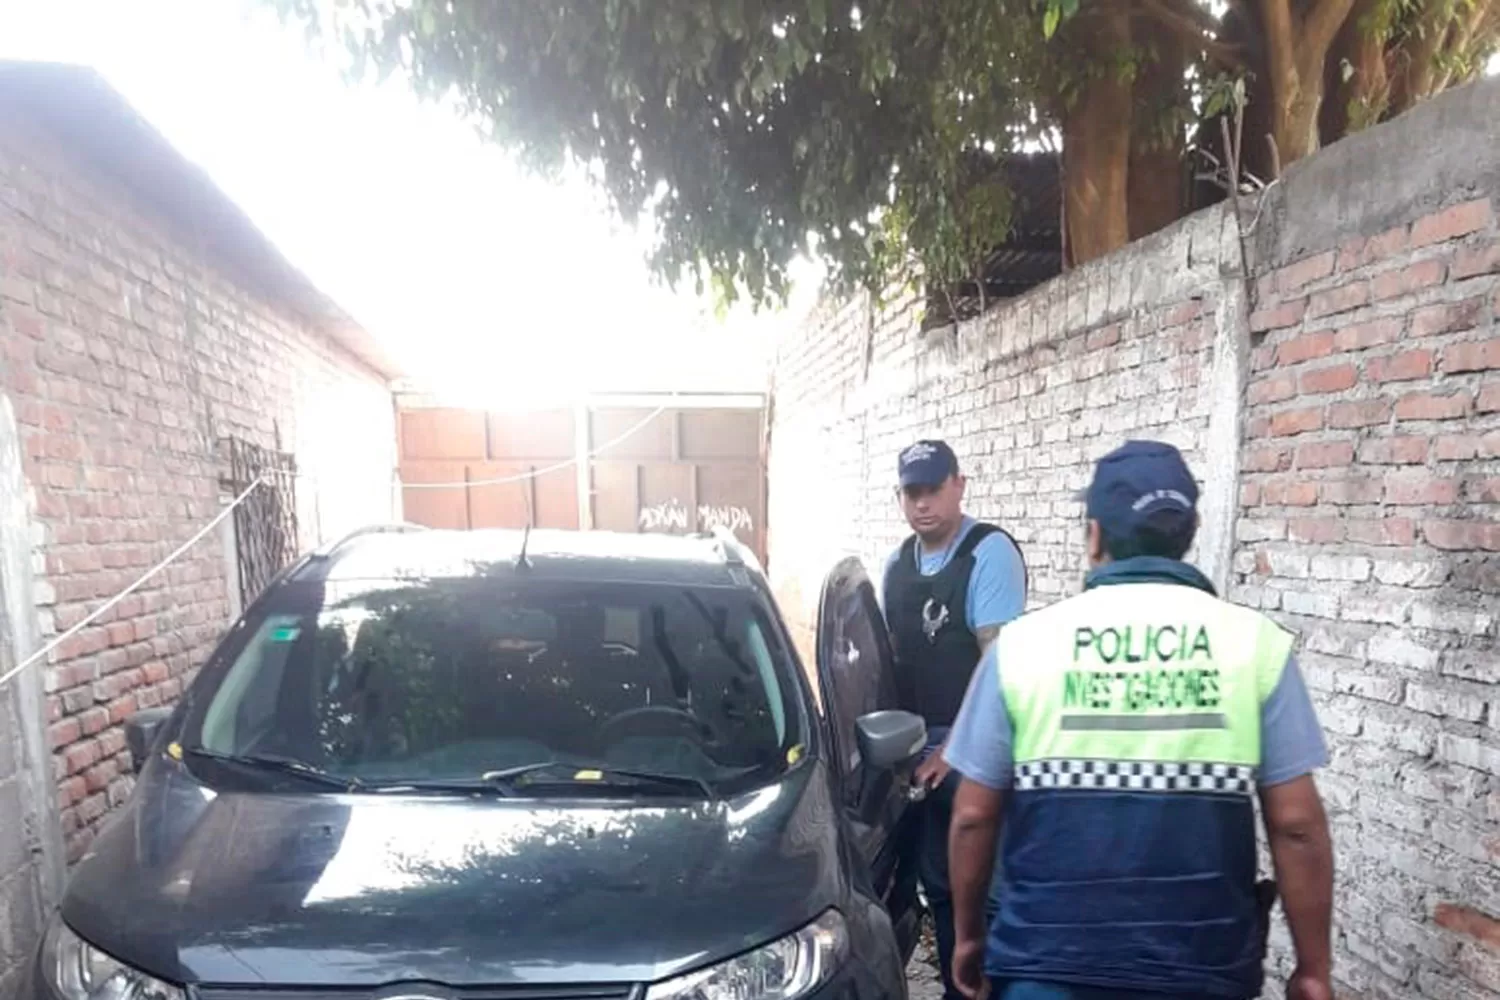 RESCATE. La Policía encontró la camioneta robada en la zon de Américo Vespusio al 2800. COMUNICACIÓN PÚBLICA